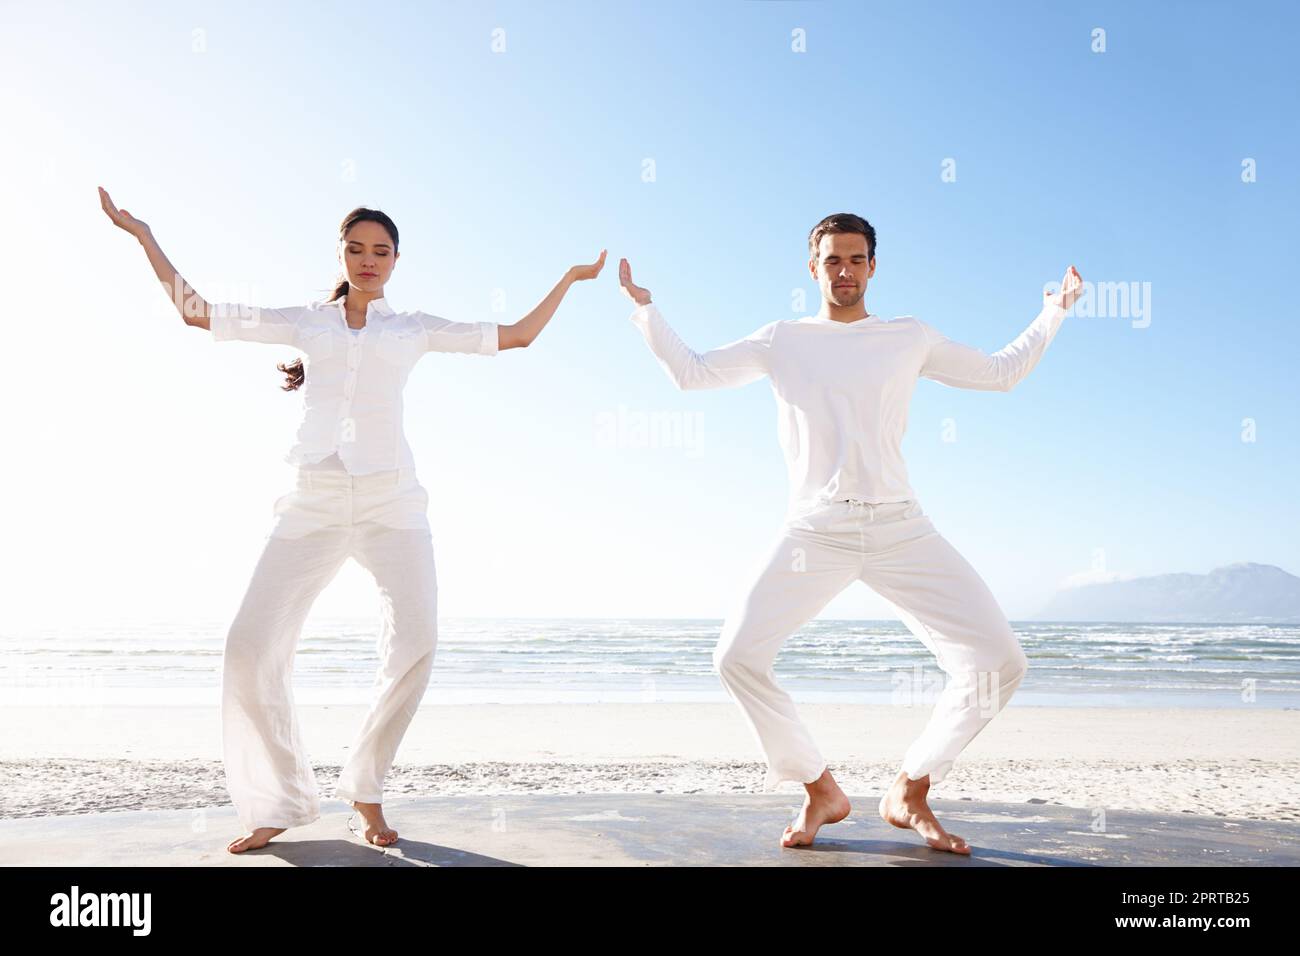 Yoga junto a la belleza de la naturaleza. Plano completo de un hombre y una mujer joven haciendo yoga junto al mar. Foto de stock